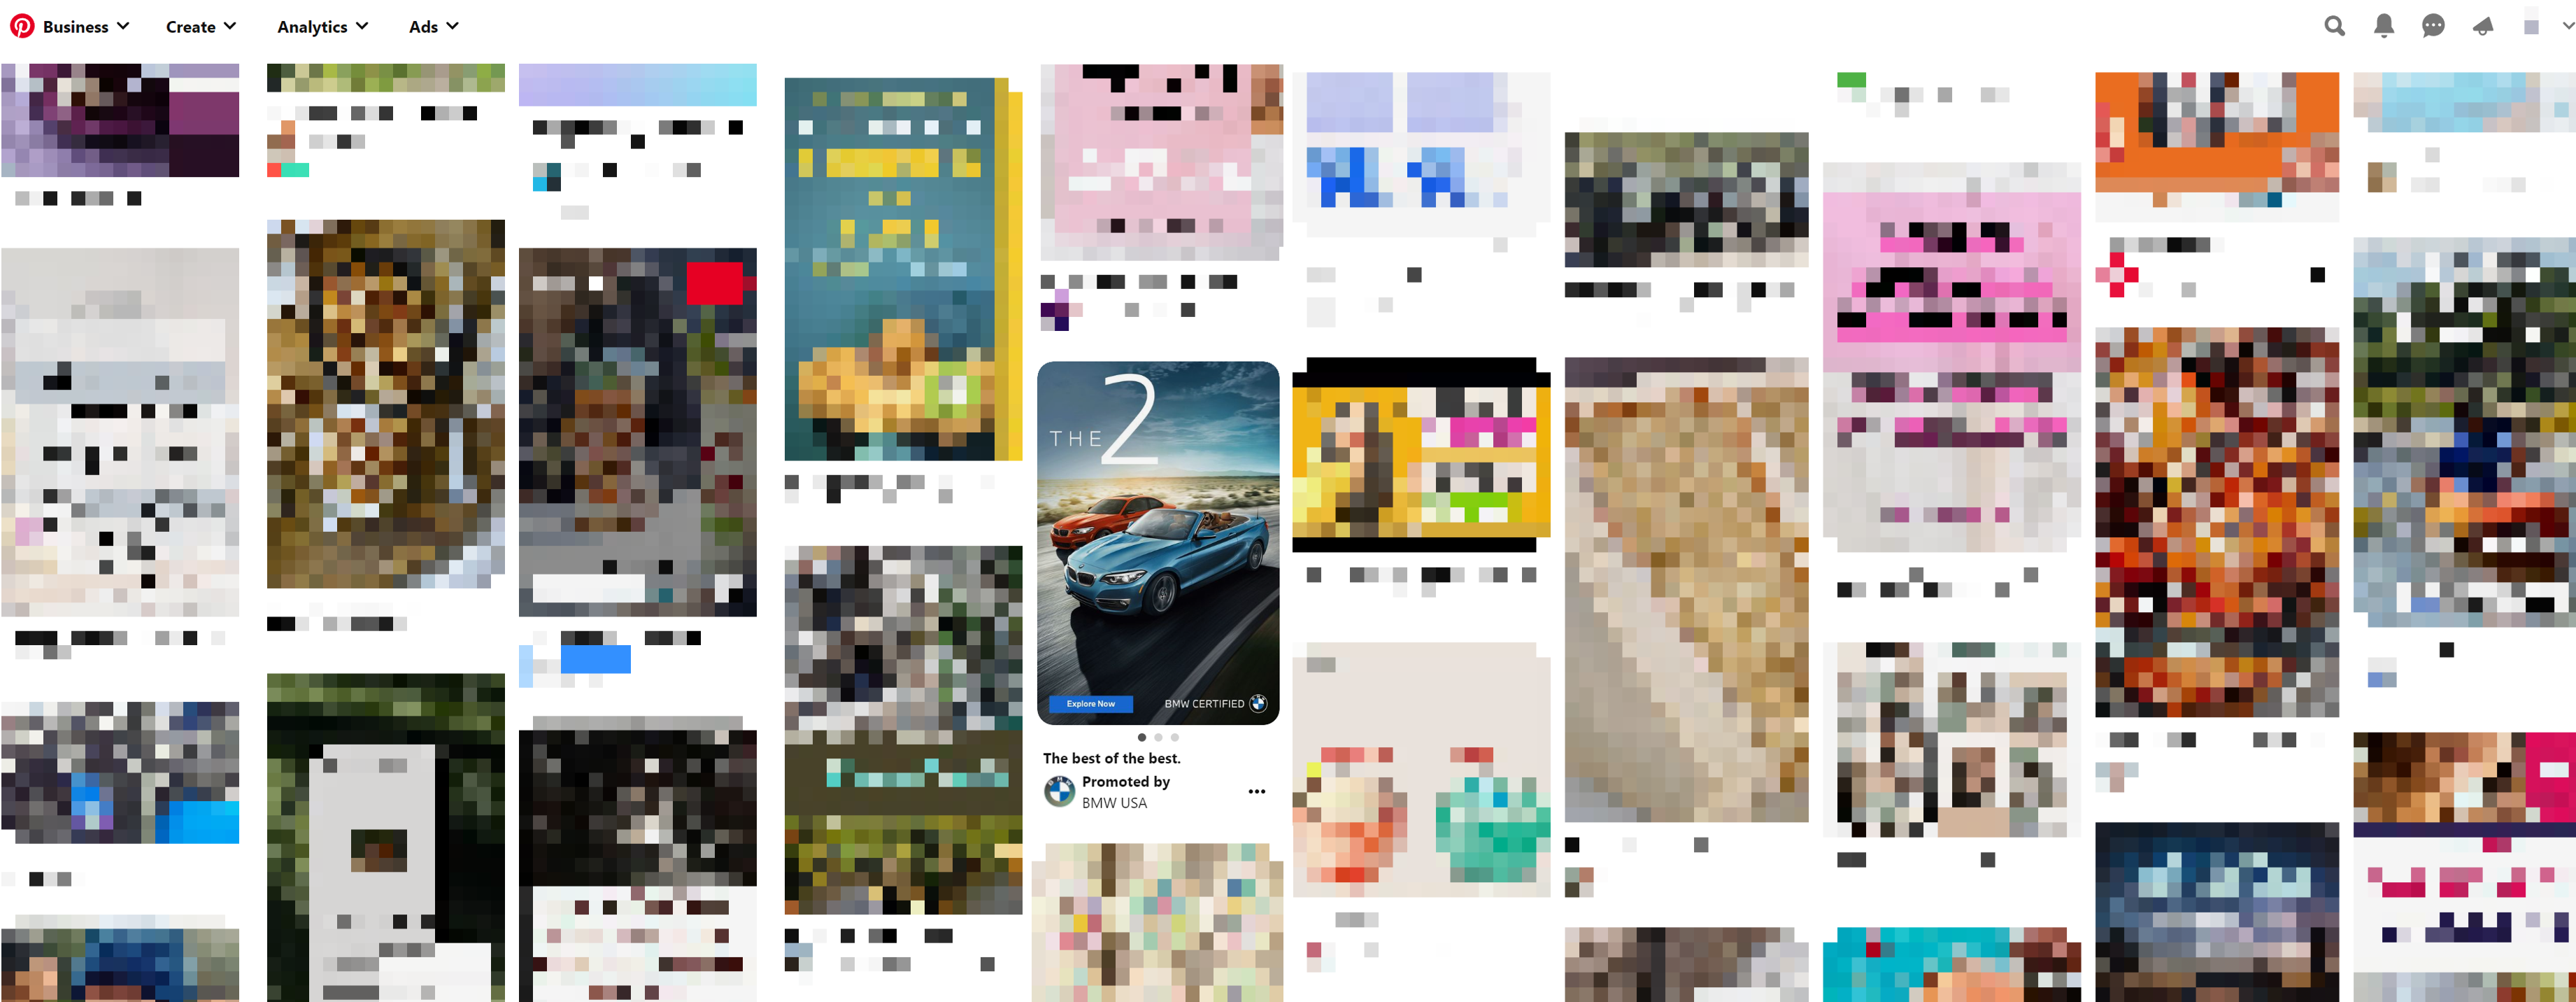 旋转木马广告在Pinterest与多个汽车图片